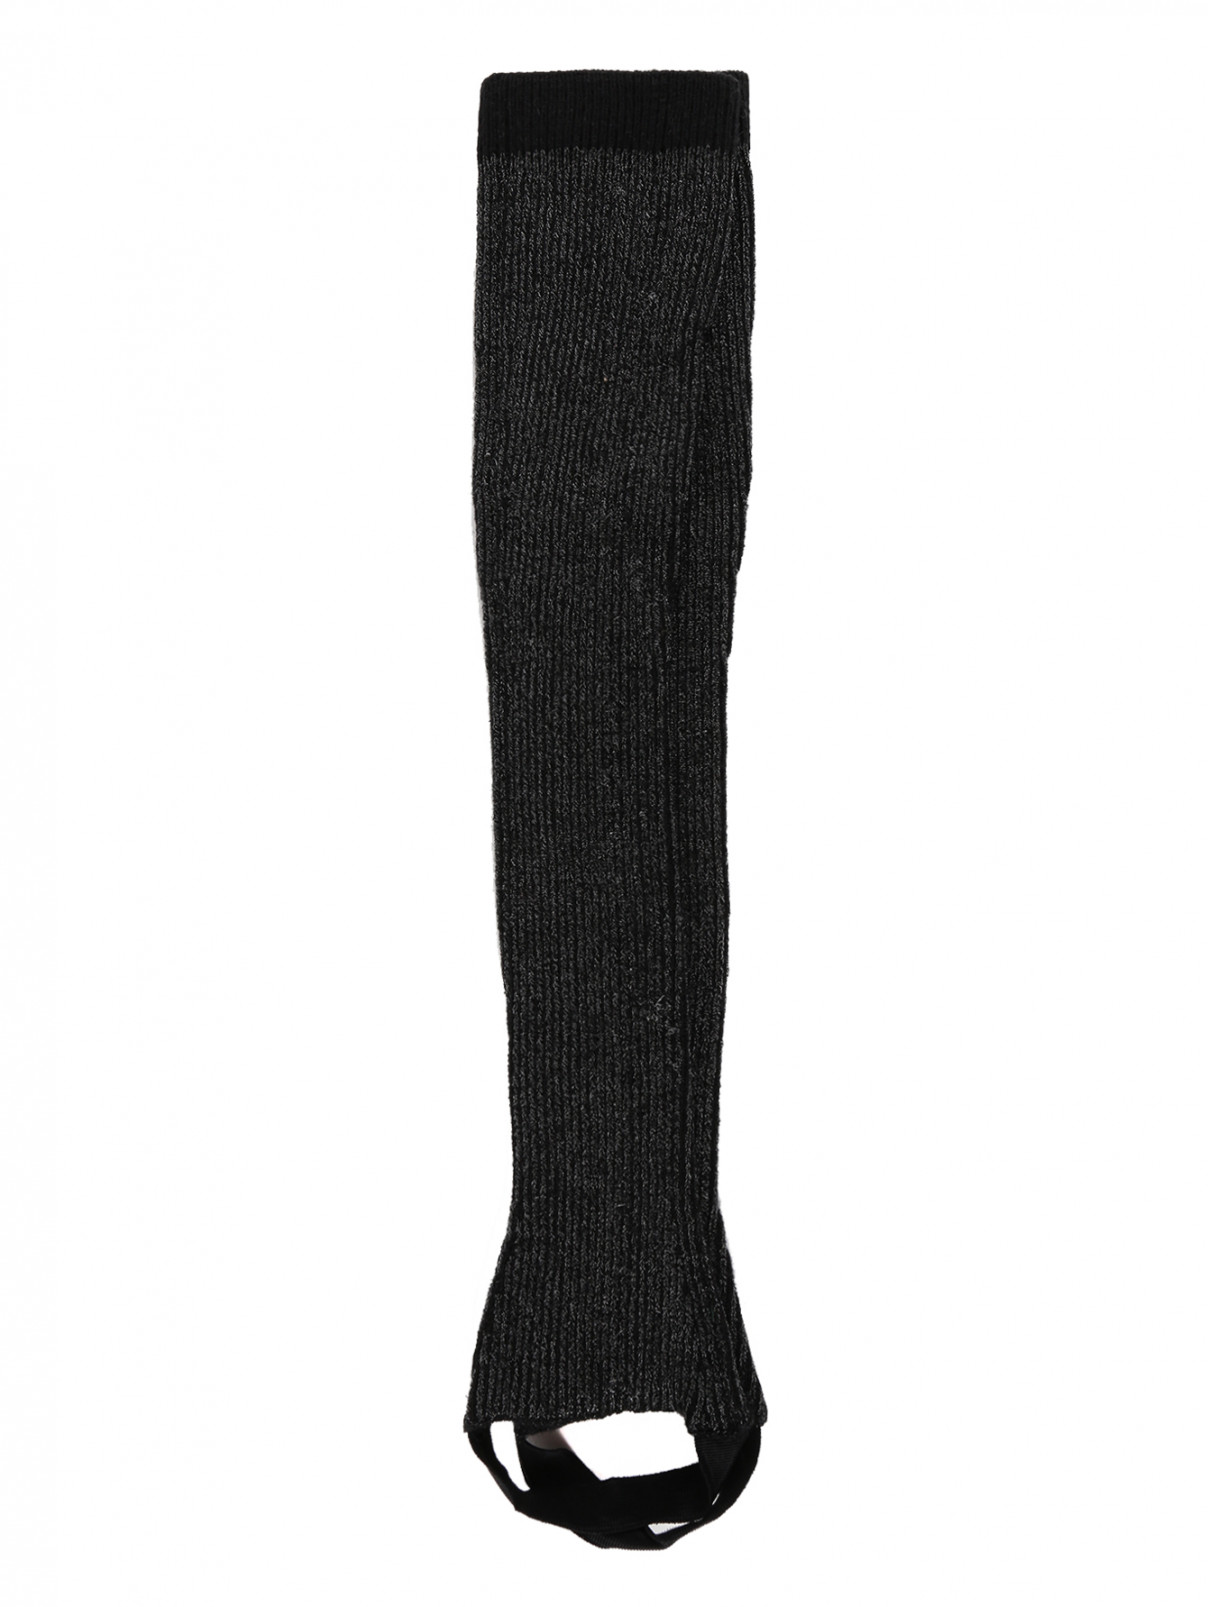 Гольфы со штрипками и люрексом Max Mara  –  Общий вид  – Цвет:  Черный